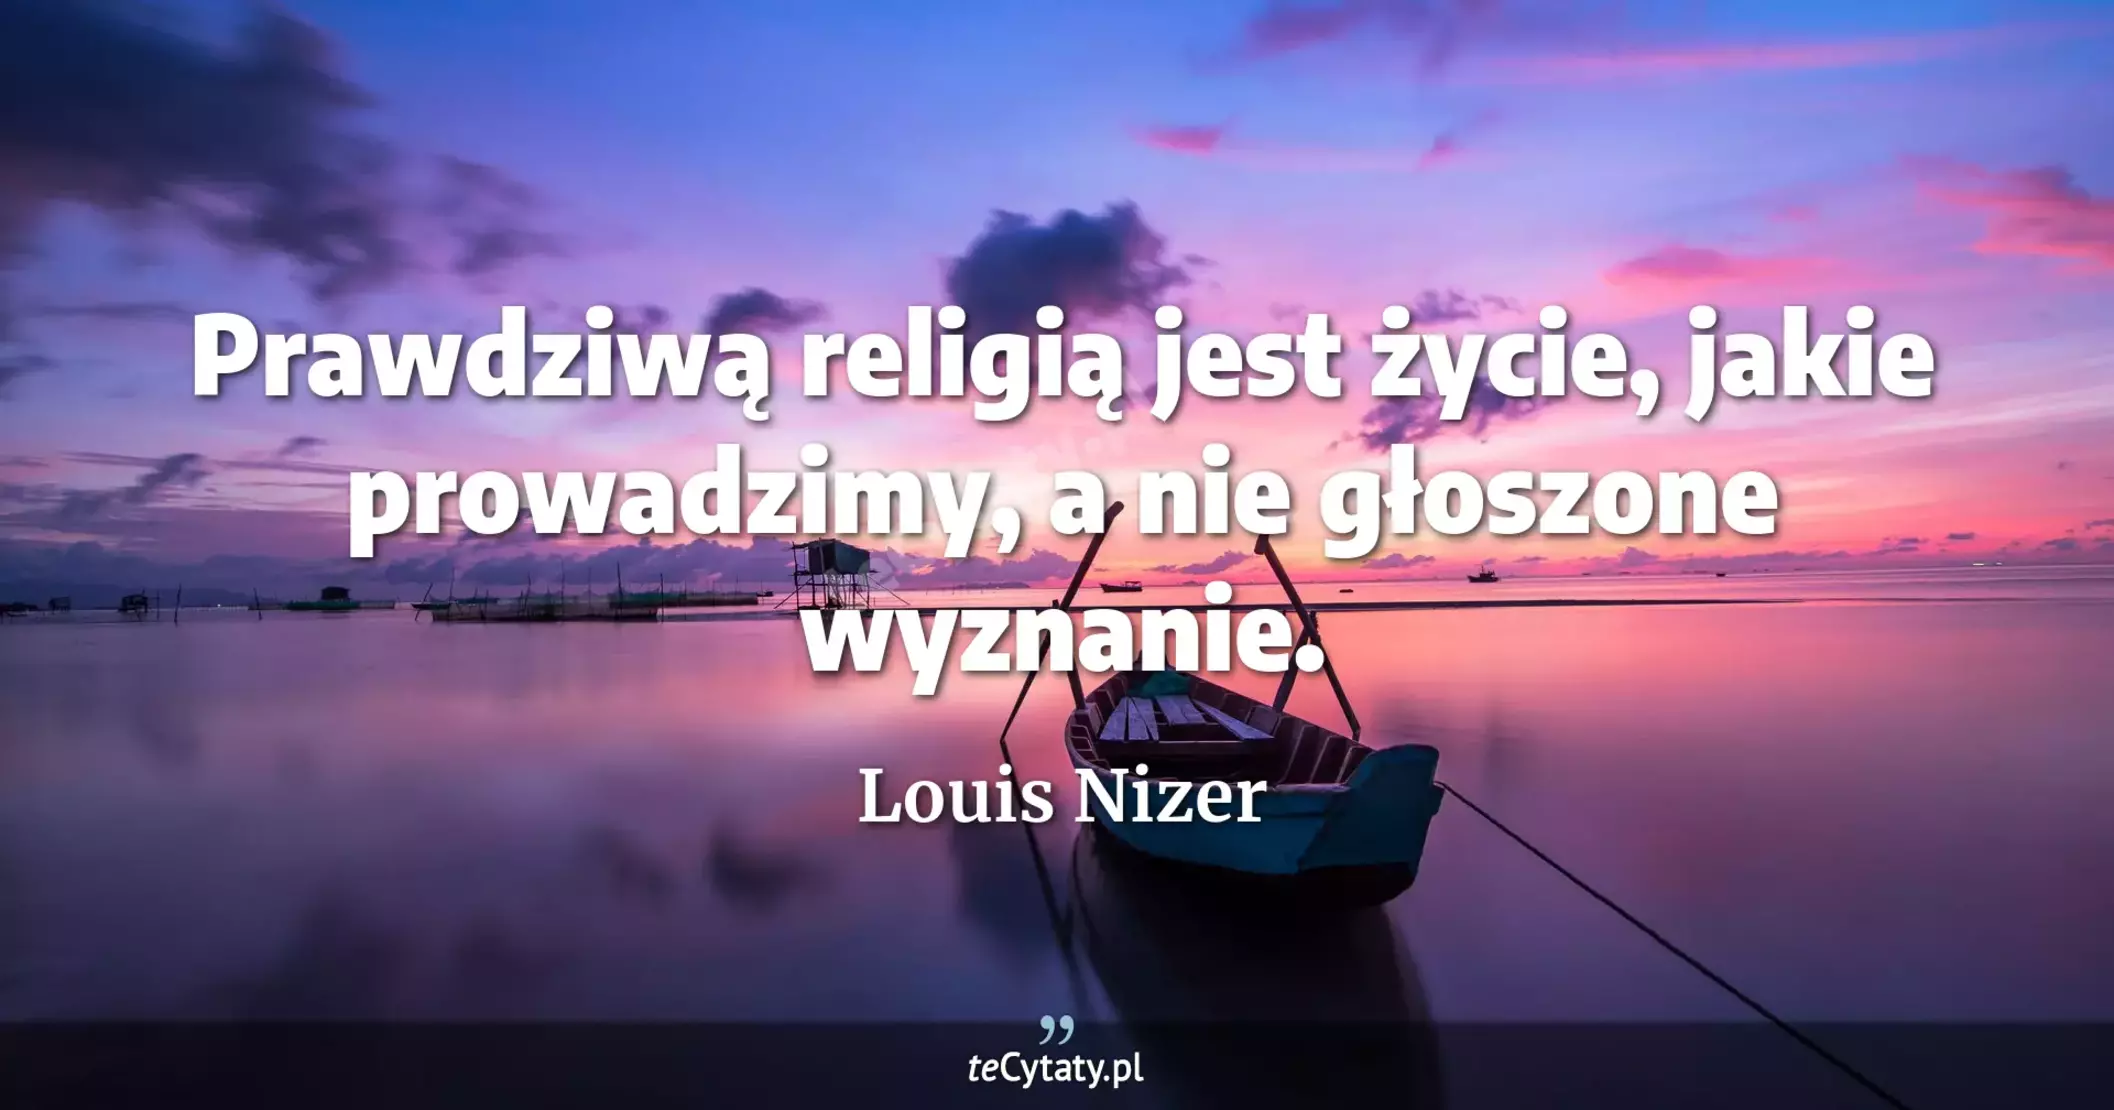 Prawdziwą religią jest życie, jakie prowadzimy, a nie głoszone wyznanie. - Louis Nizer